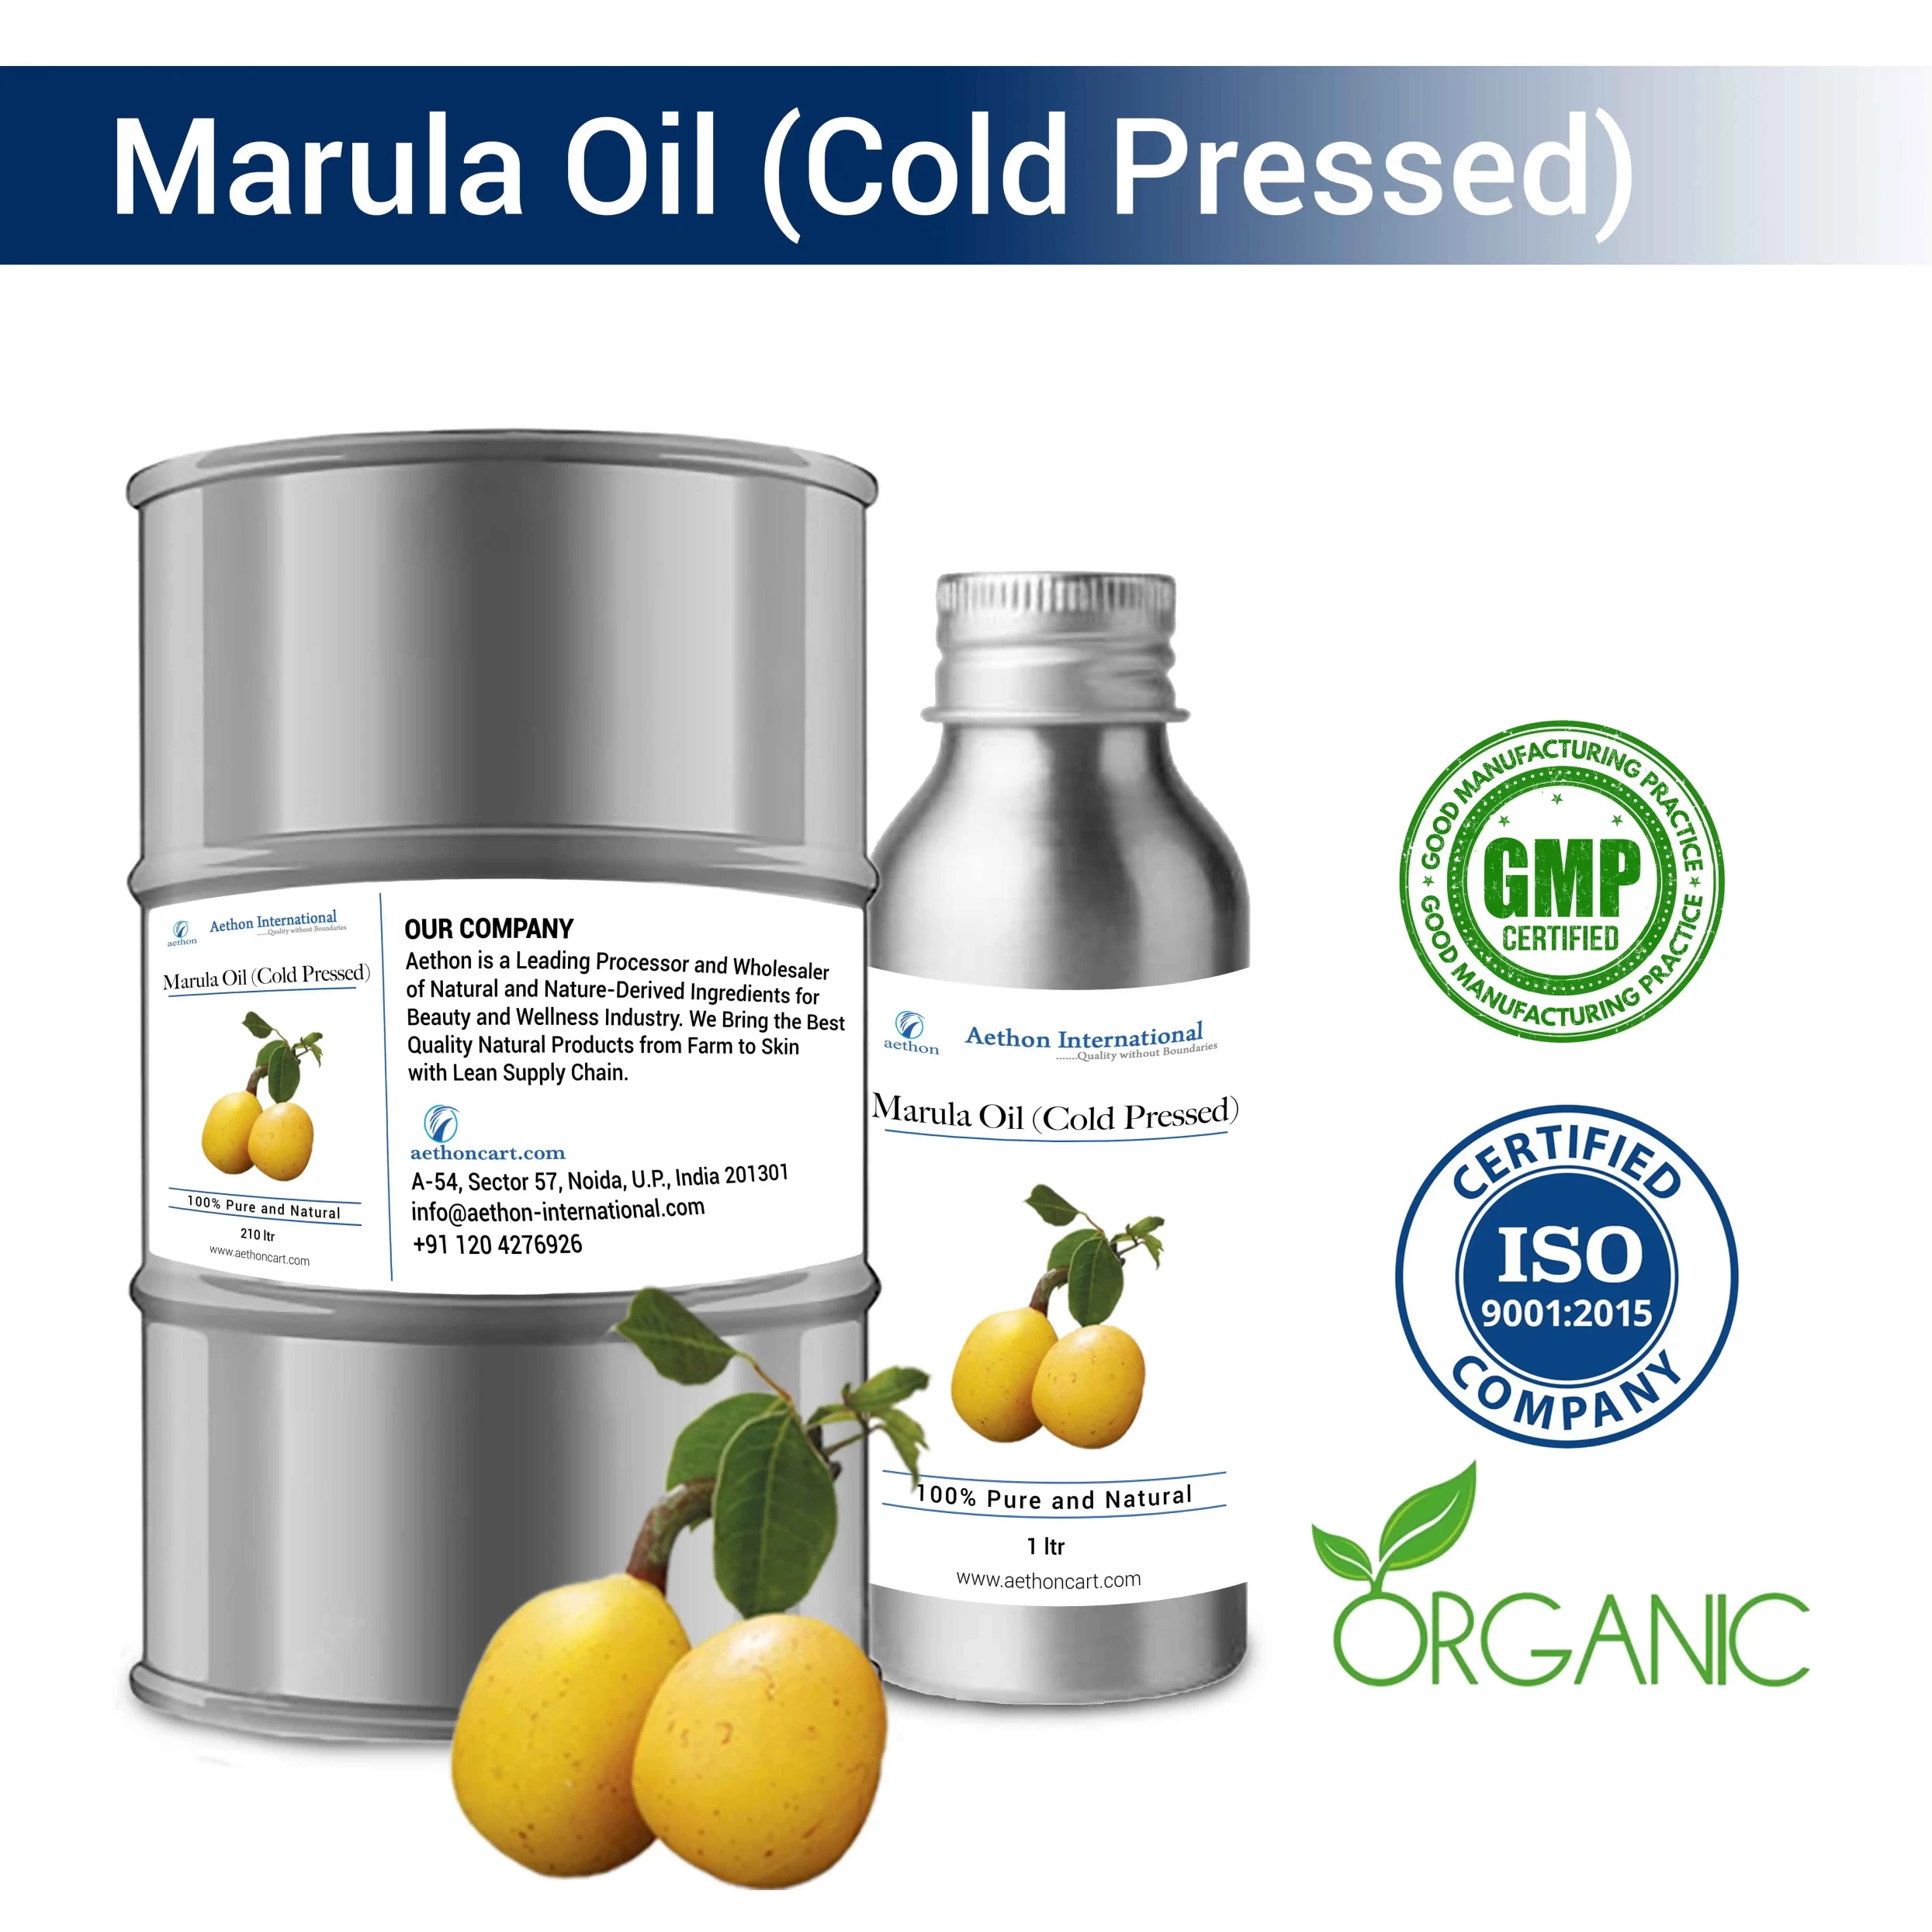 Marula Oil (Cold Pressed)